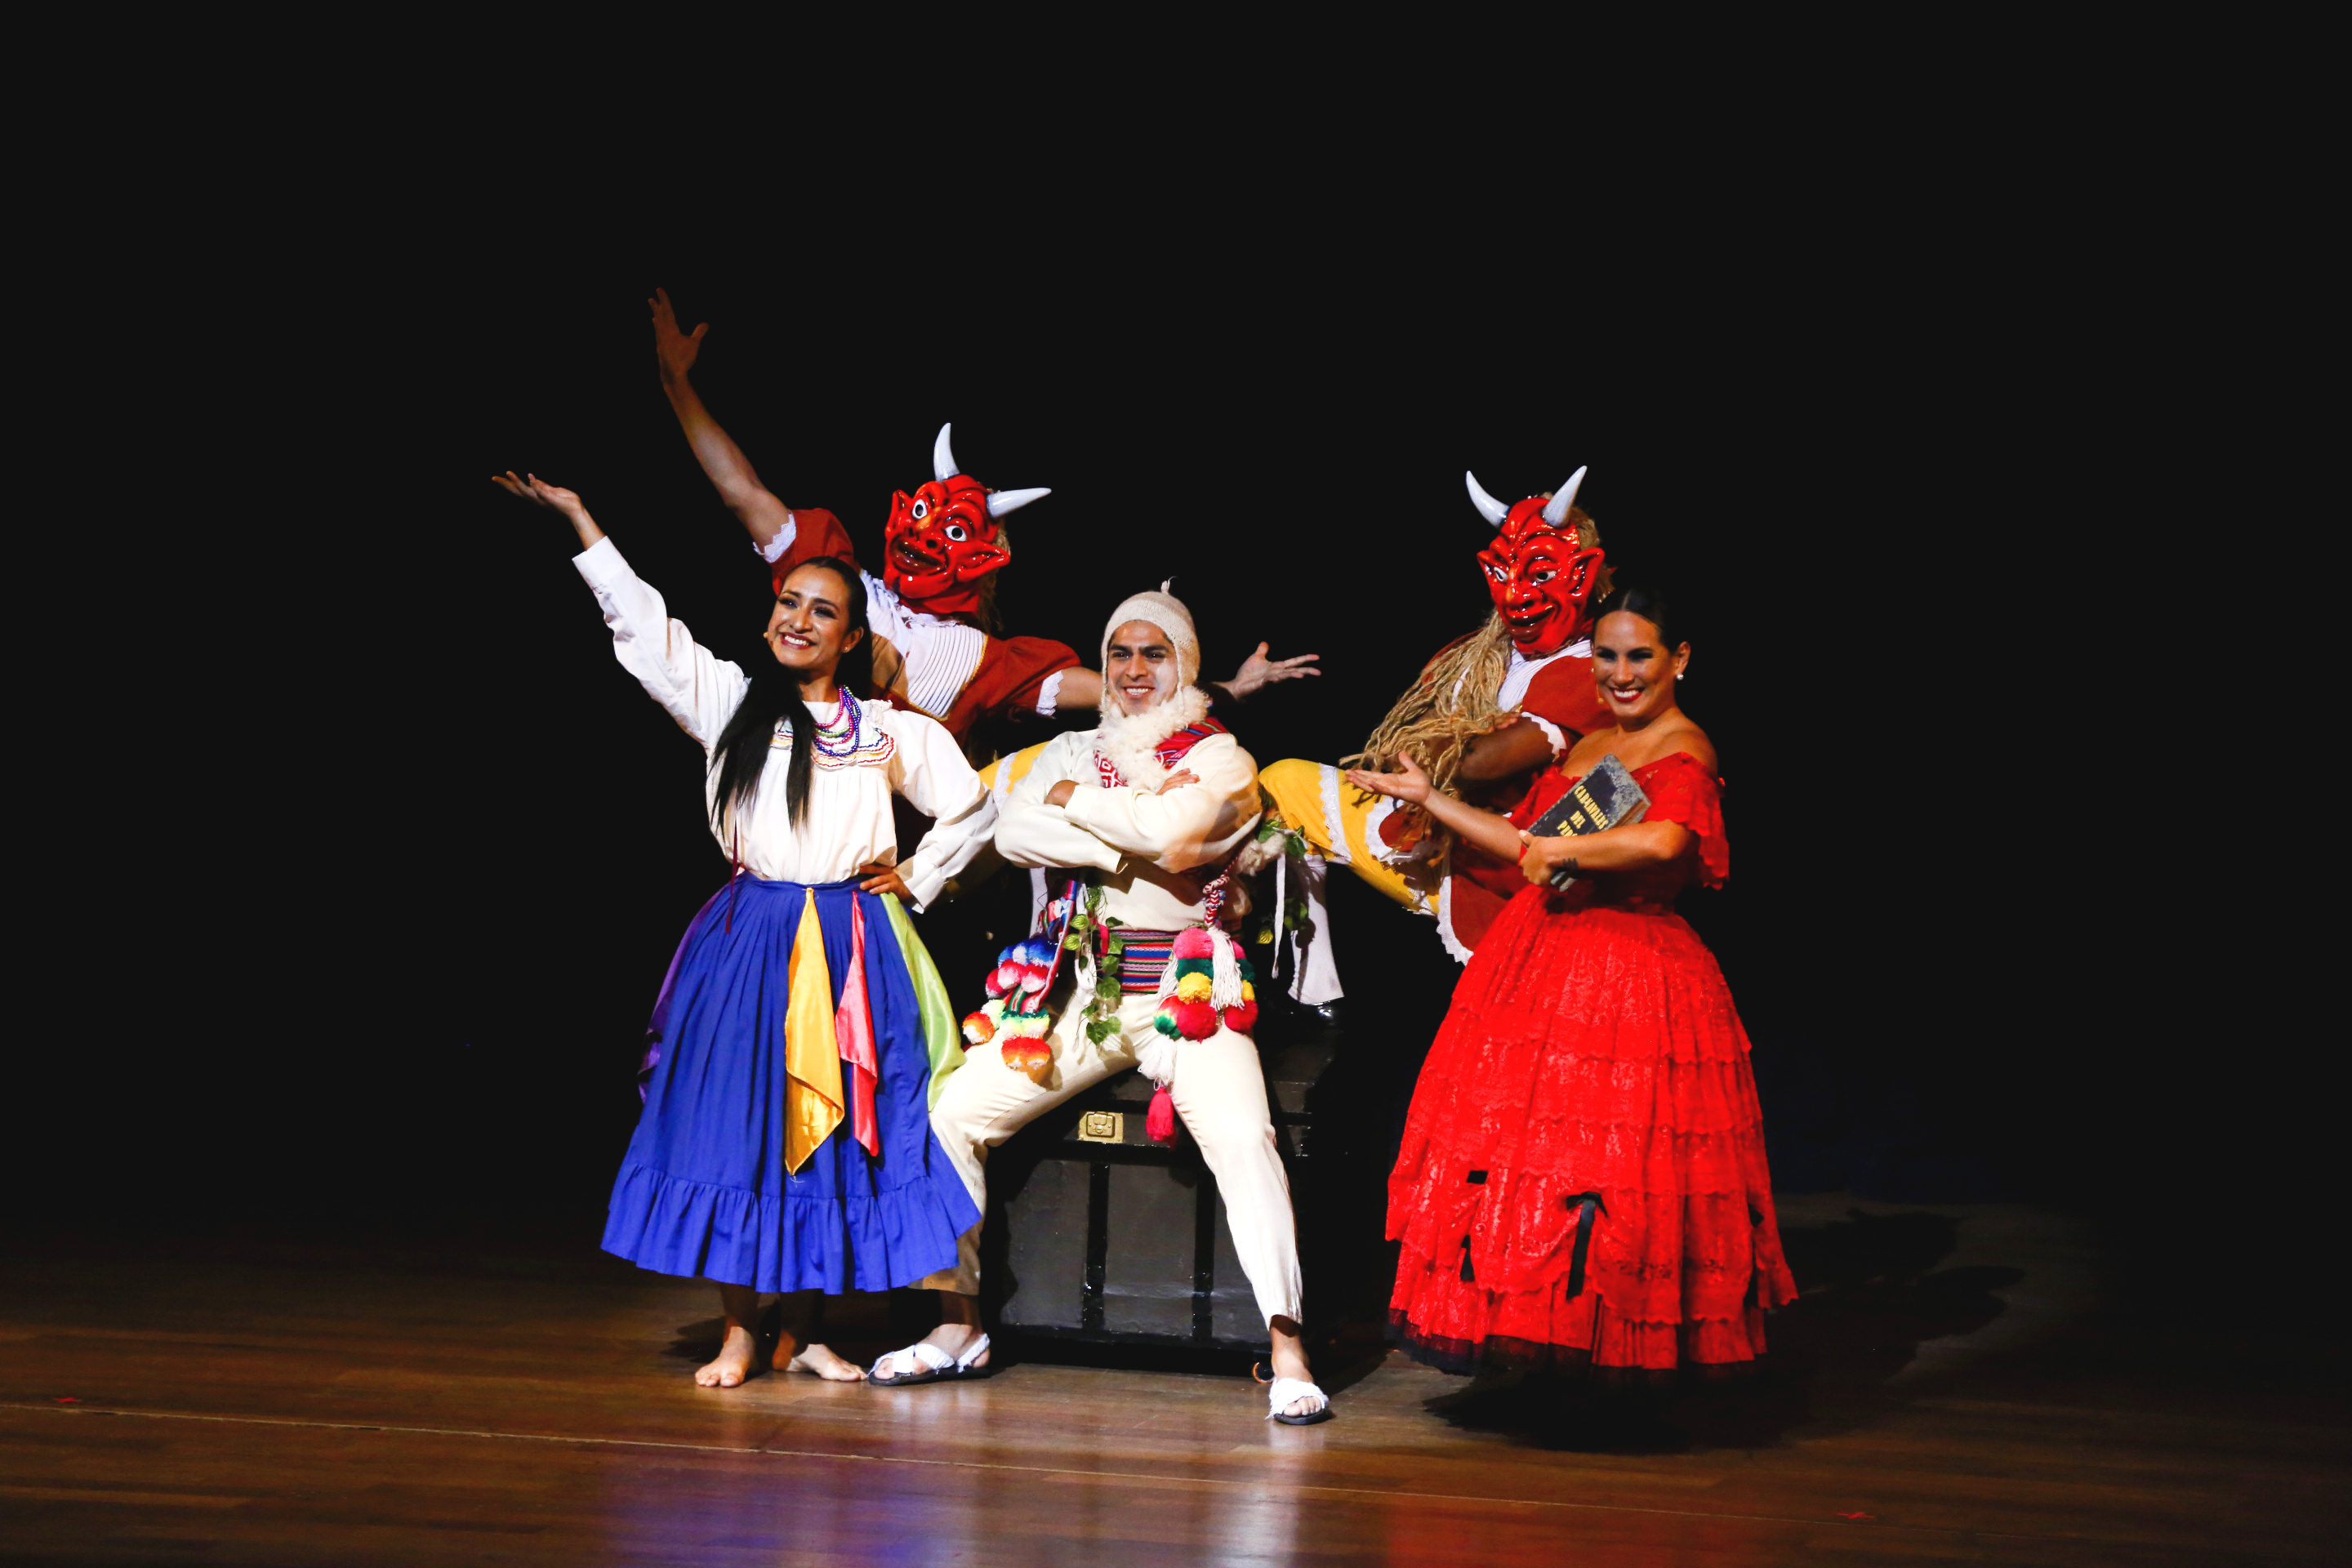 Ballet Folclórico Nacional del Perú presenta “Carnavales” en el Gran Teatro Nacional